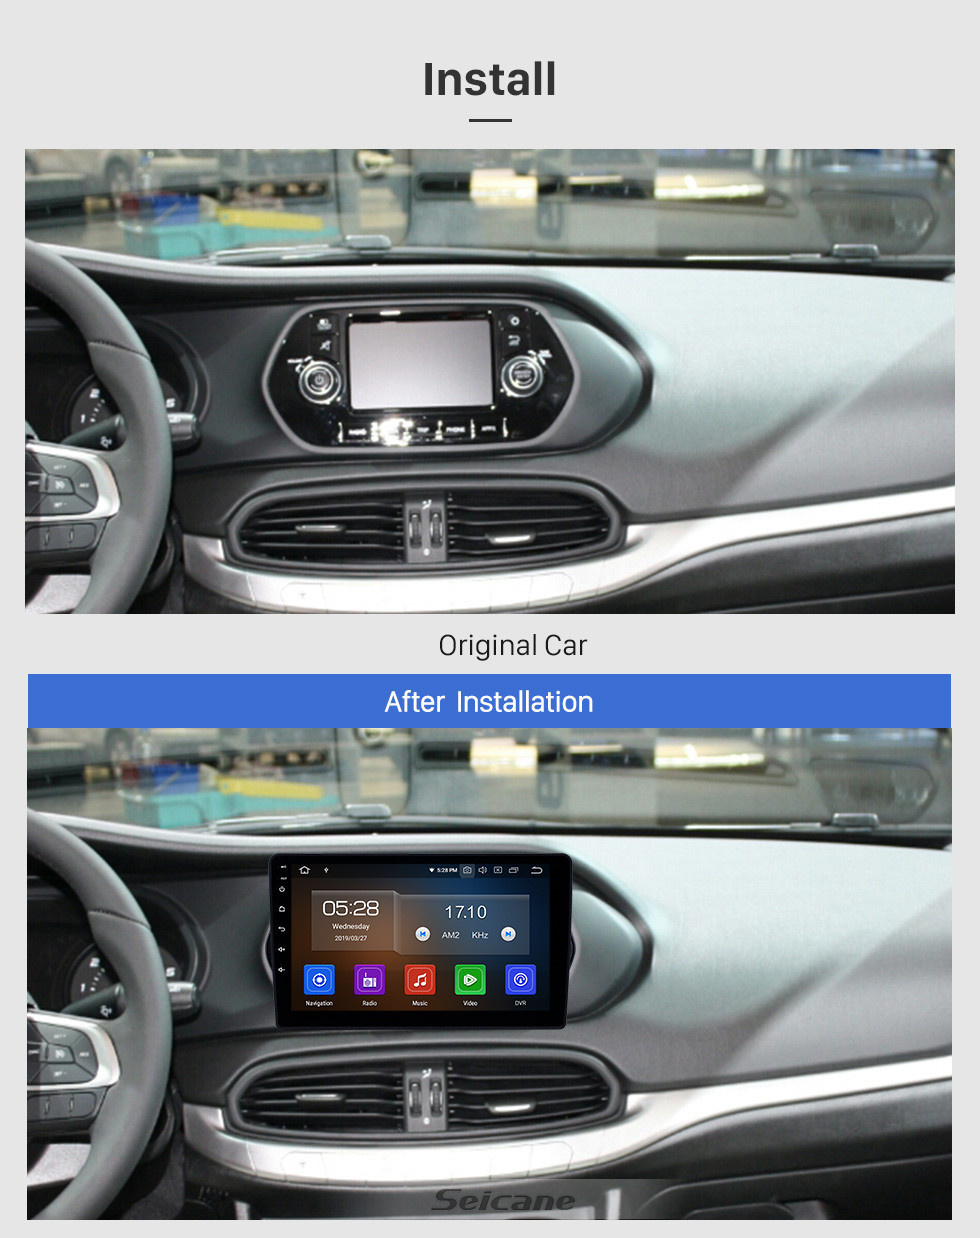 Seicane HD Ecrã Tátil 2015-2018 Fiat EGEA Android 11.0 9 polegada Navegação GPS Rádio Bluetooth WI-FI USB Carplay suporte DAB + TPMS OBD2